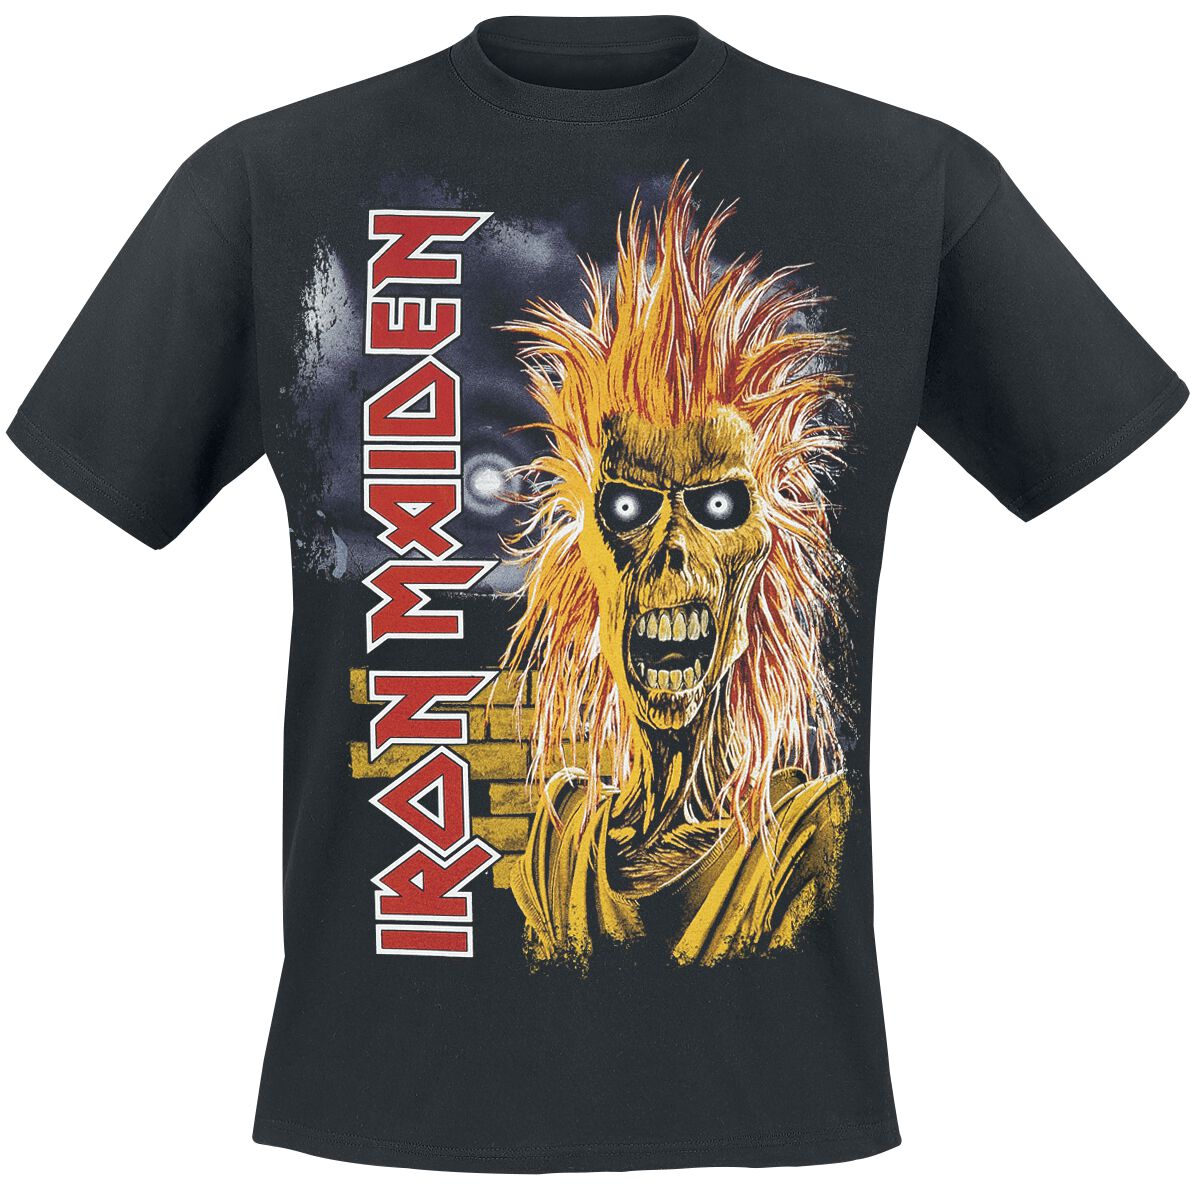 Iron Maiden 1st Album Tracklist T-Shirt schwarz in 3XL